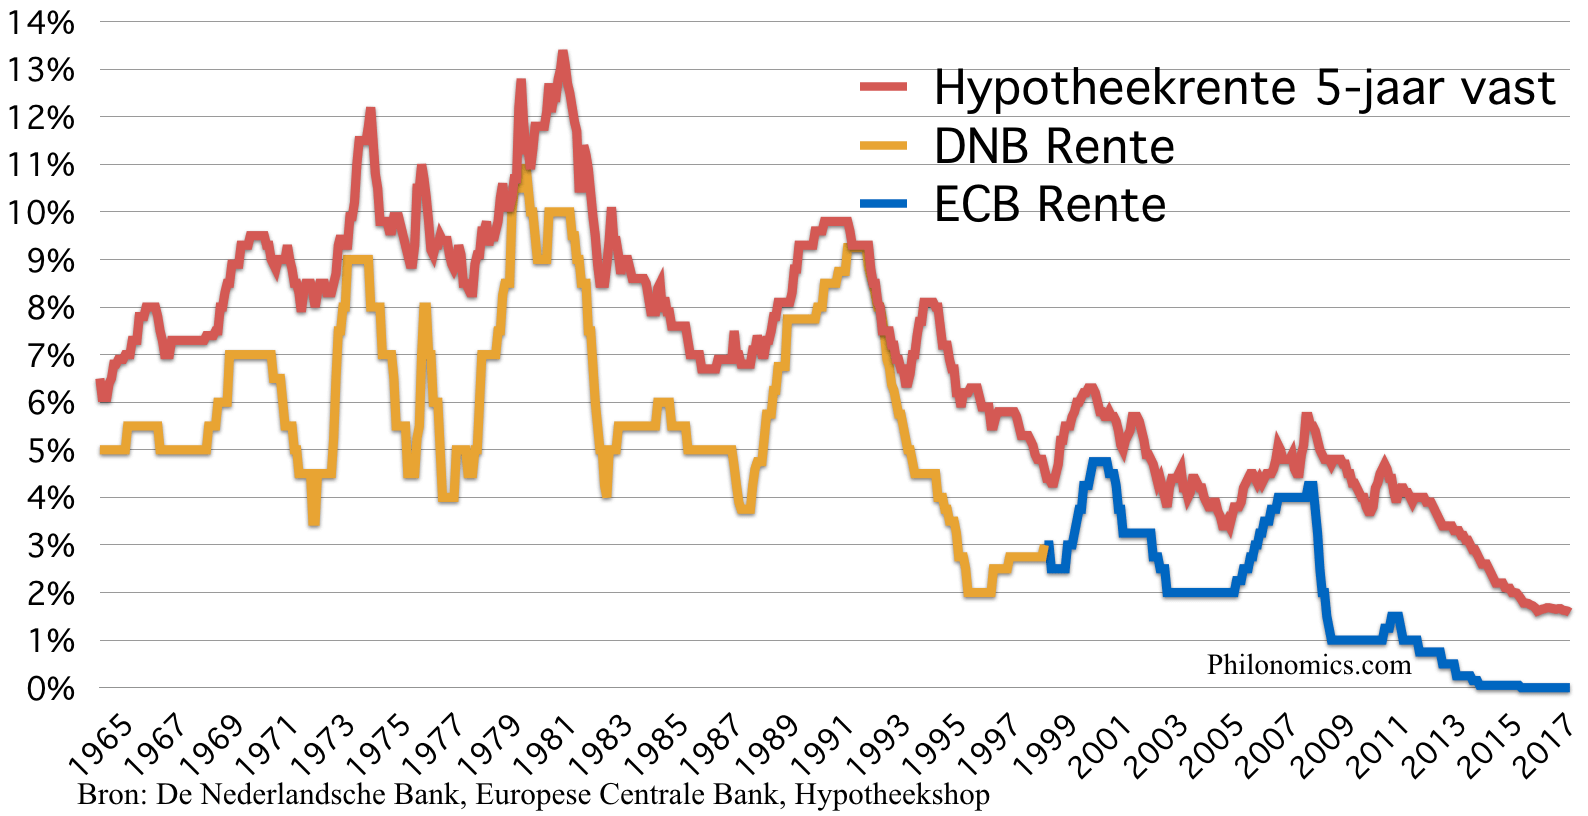 Nederlandse centrale bank rente en hypotheekrente 1965-2017